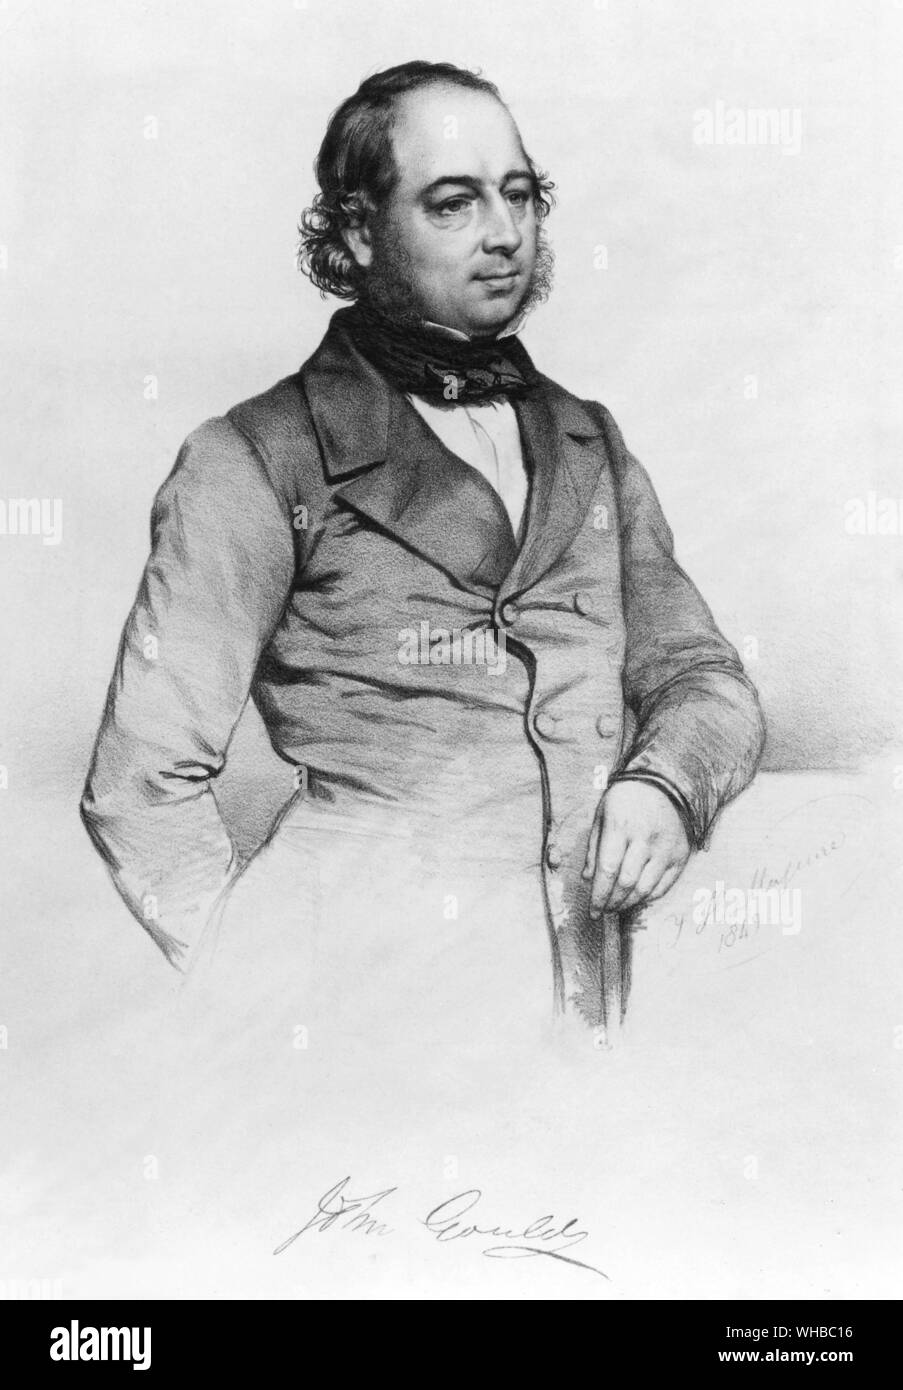 John Gould (14 septembre 1804 - 3 février 1881) était un ornithologue anglais. La Ligue de Gould en Australie a été nommé d'après lui. Son identification de Charles Darwin's finches a joué un rôle central dans le développement de la théorie de l'origine des espèces.. Banque D'Images